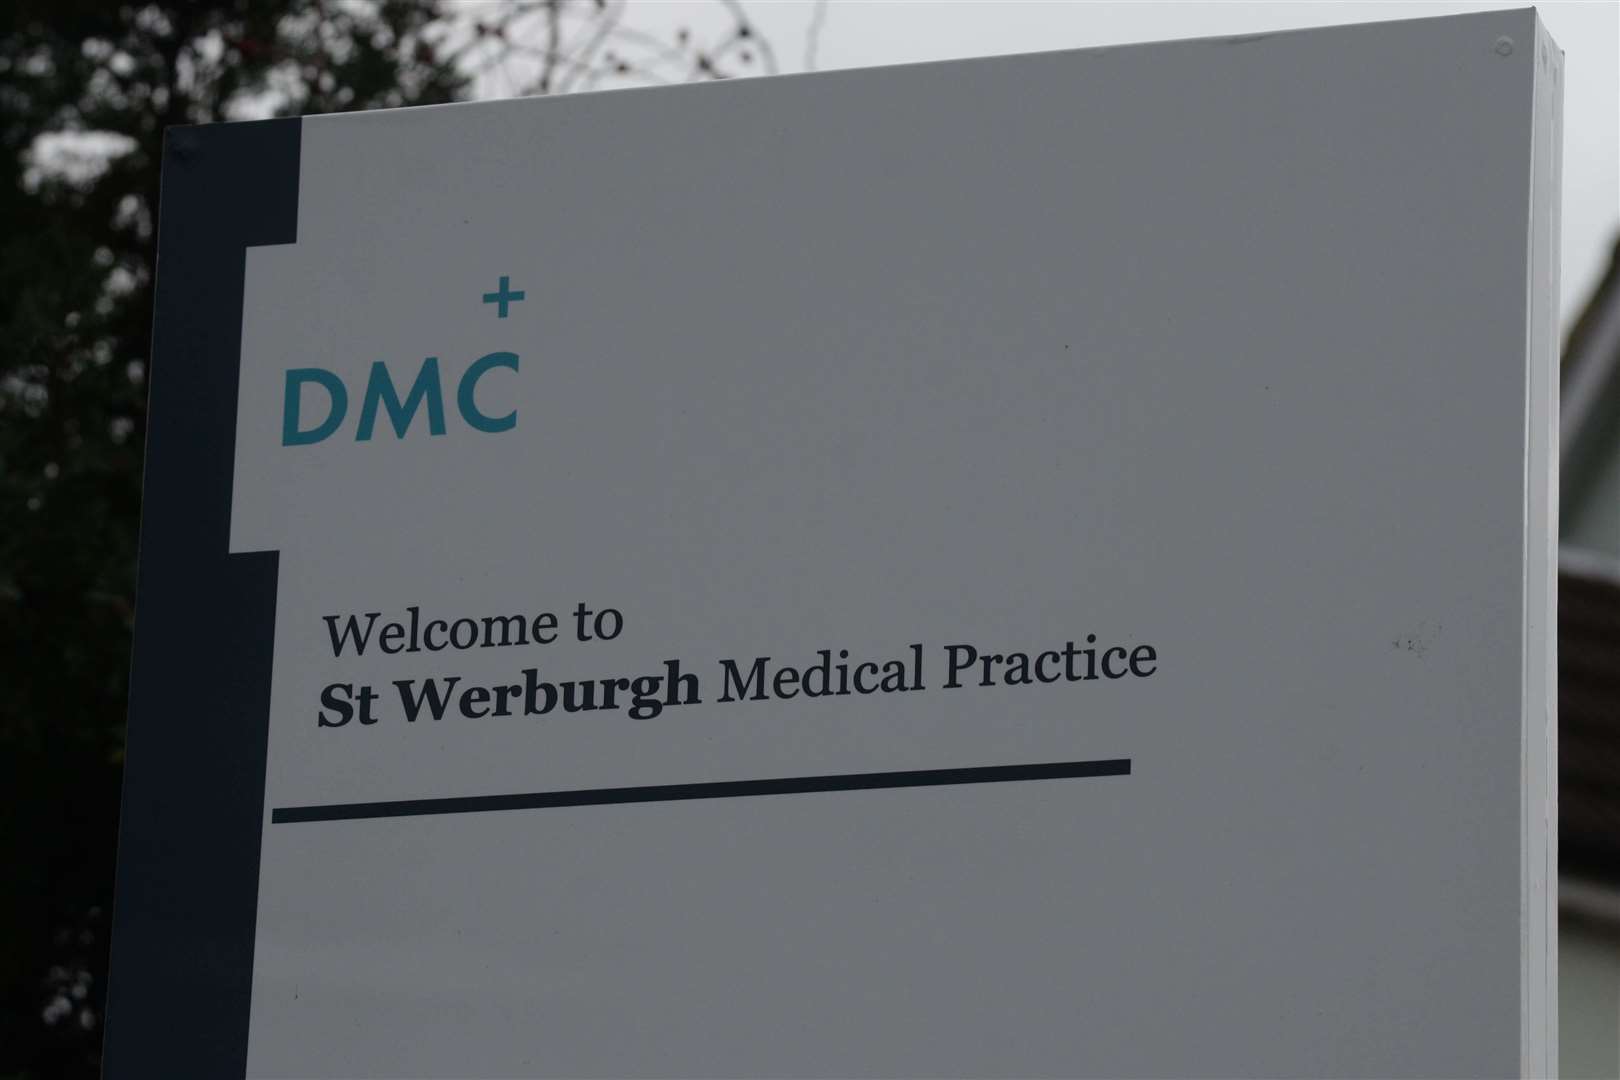 The Hoo St Werburgh Medical Practice